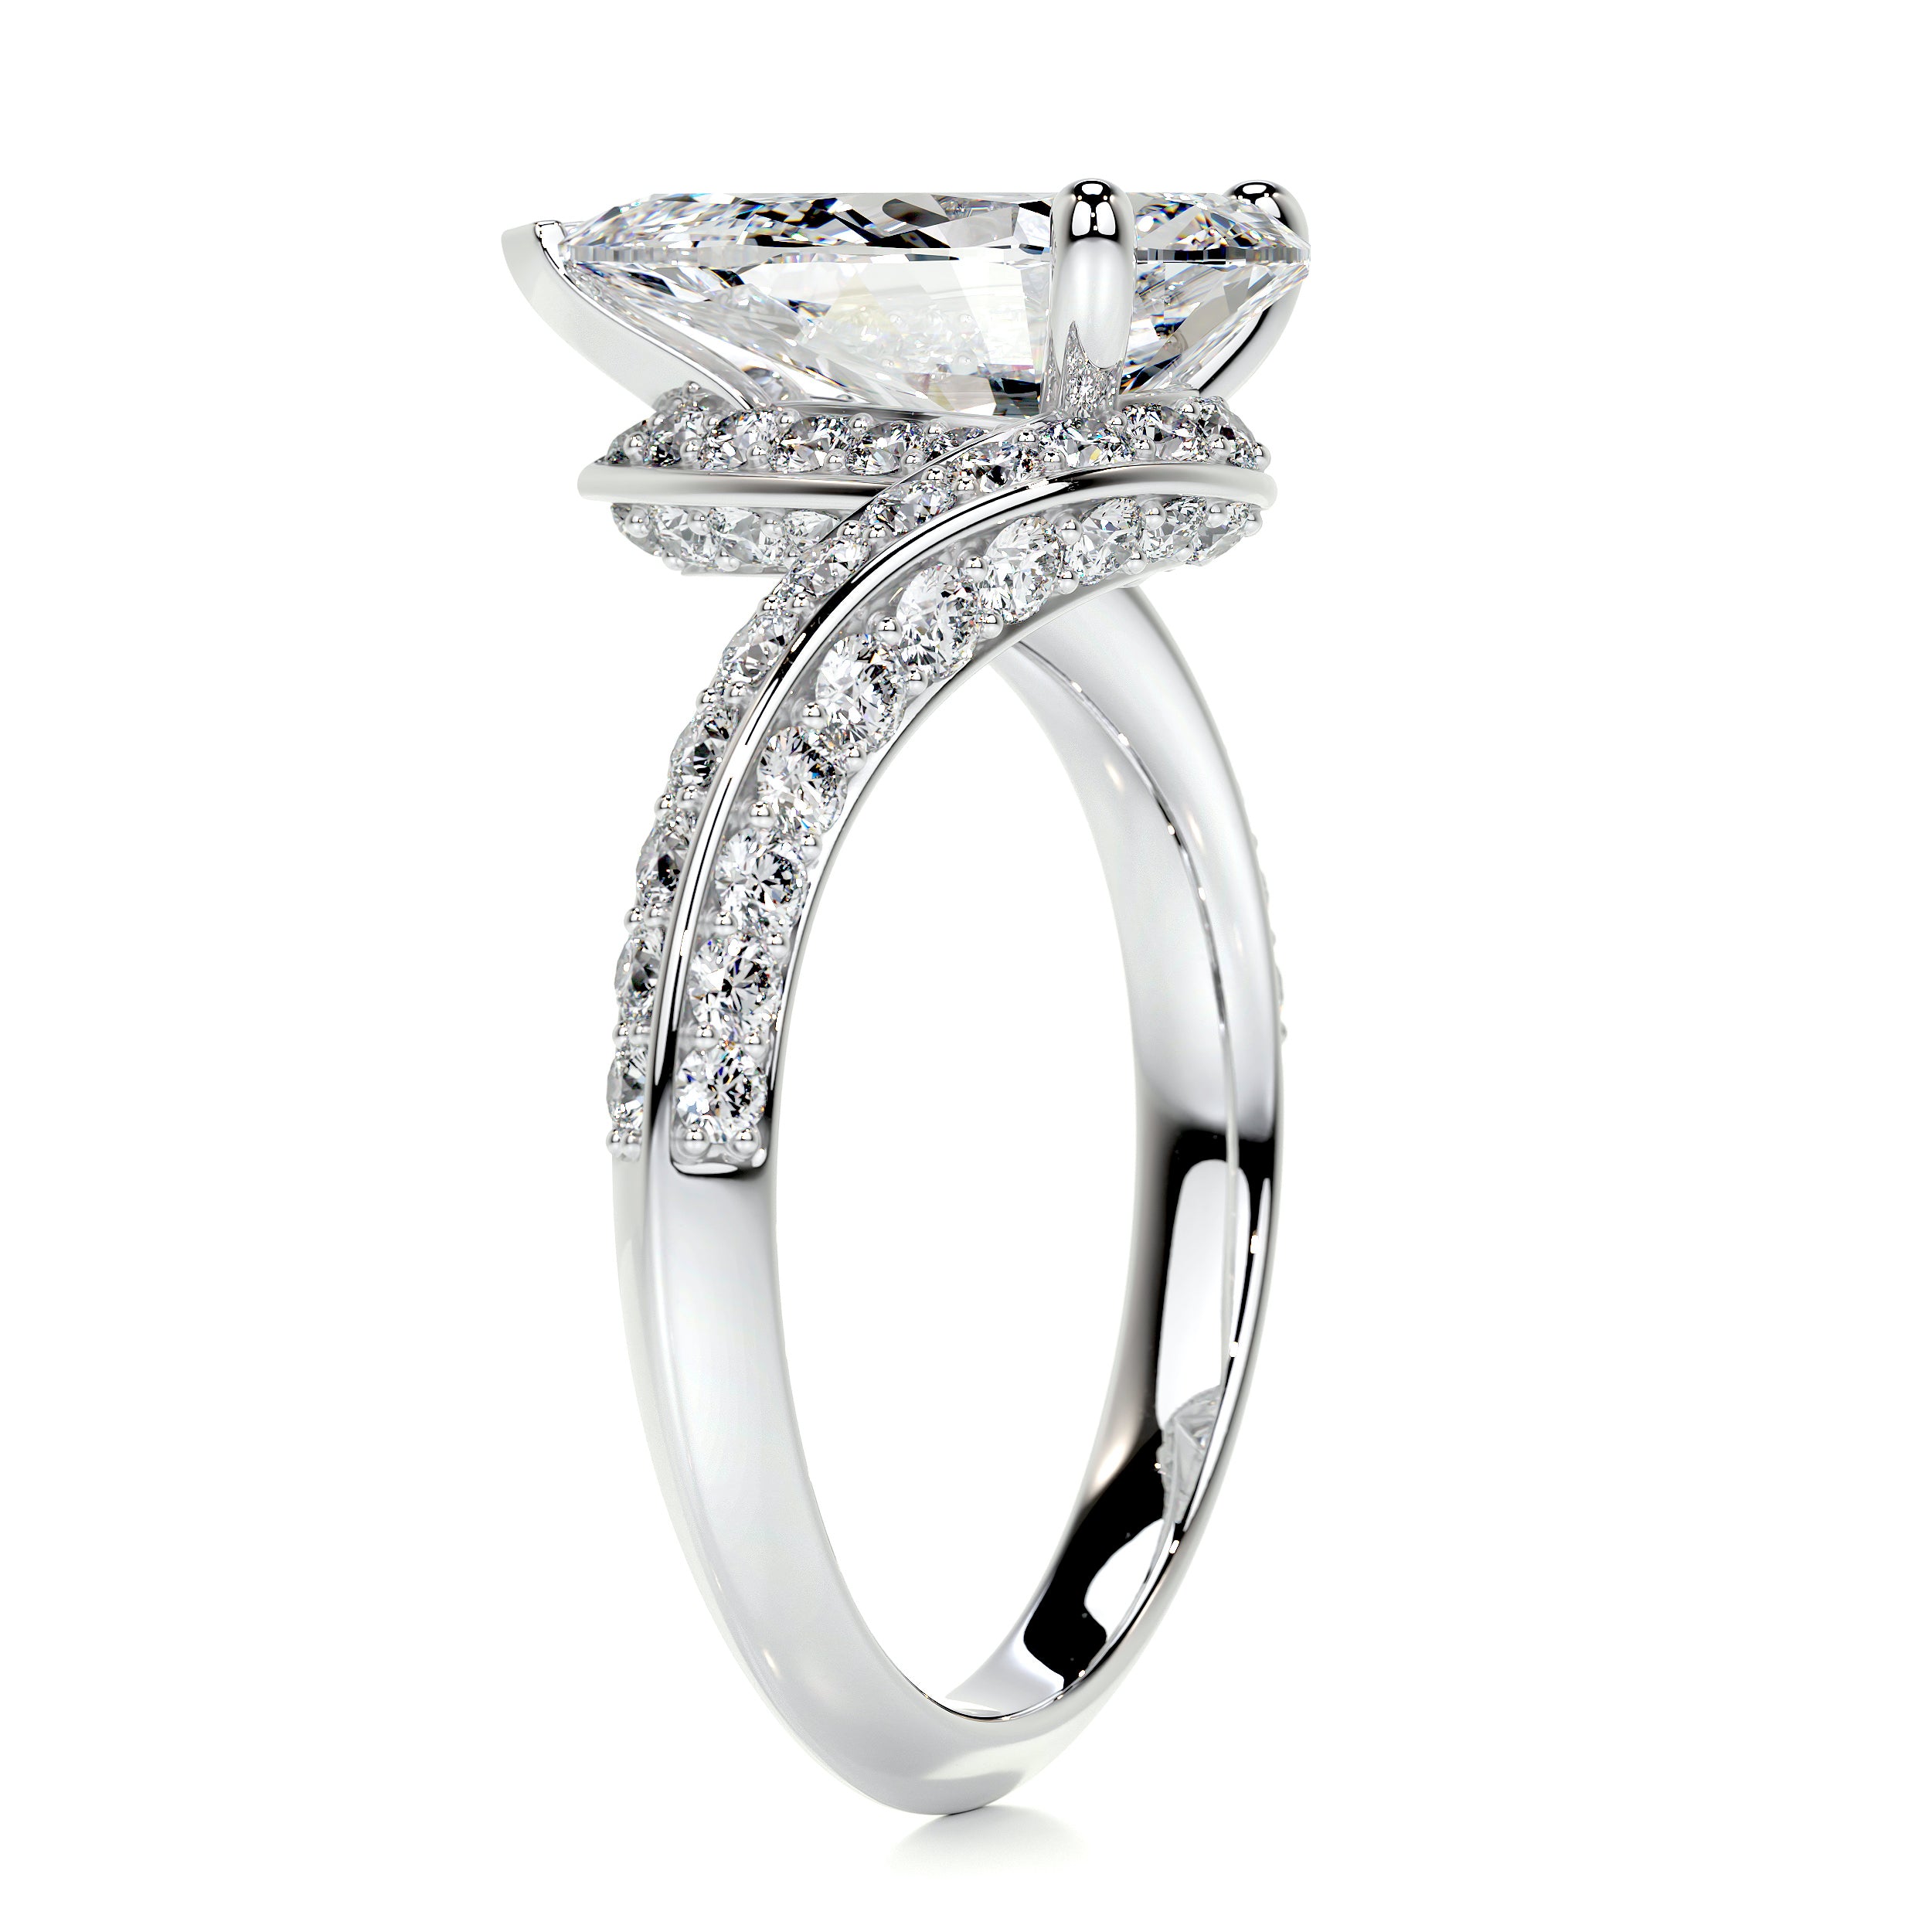 Sabrina Diamond Engagement Ring   (2.5 Carat) -14K White Gold